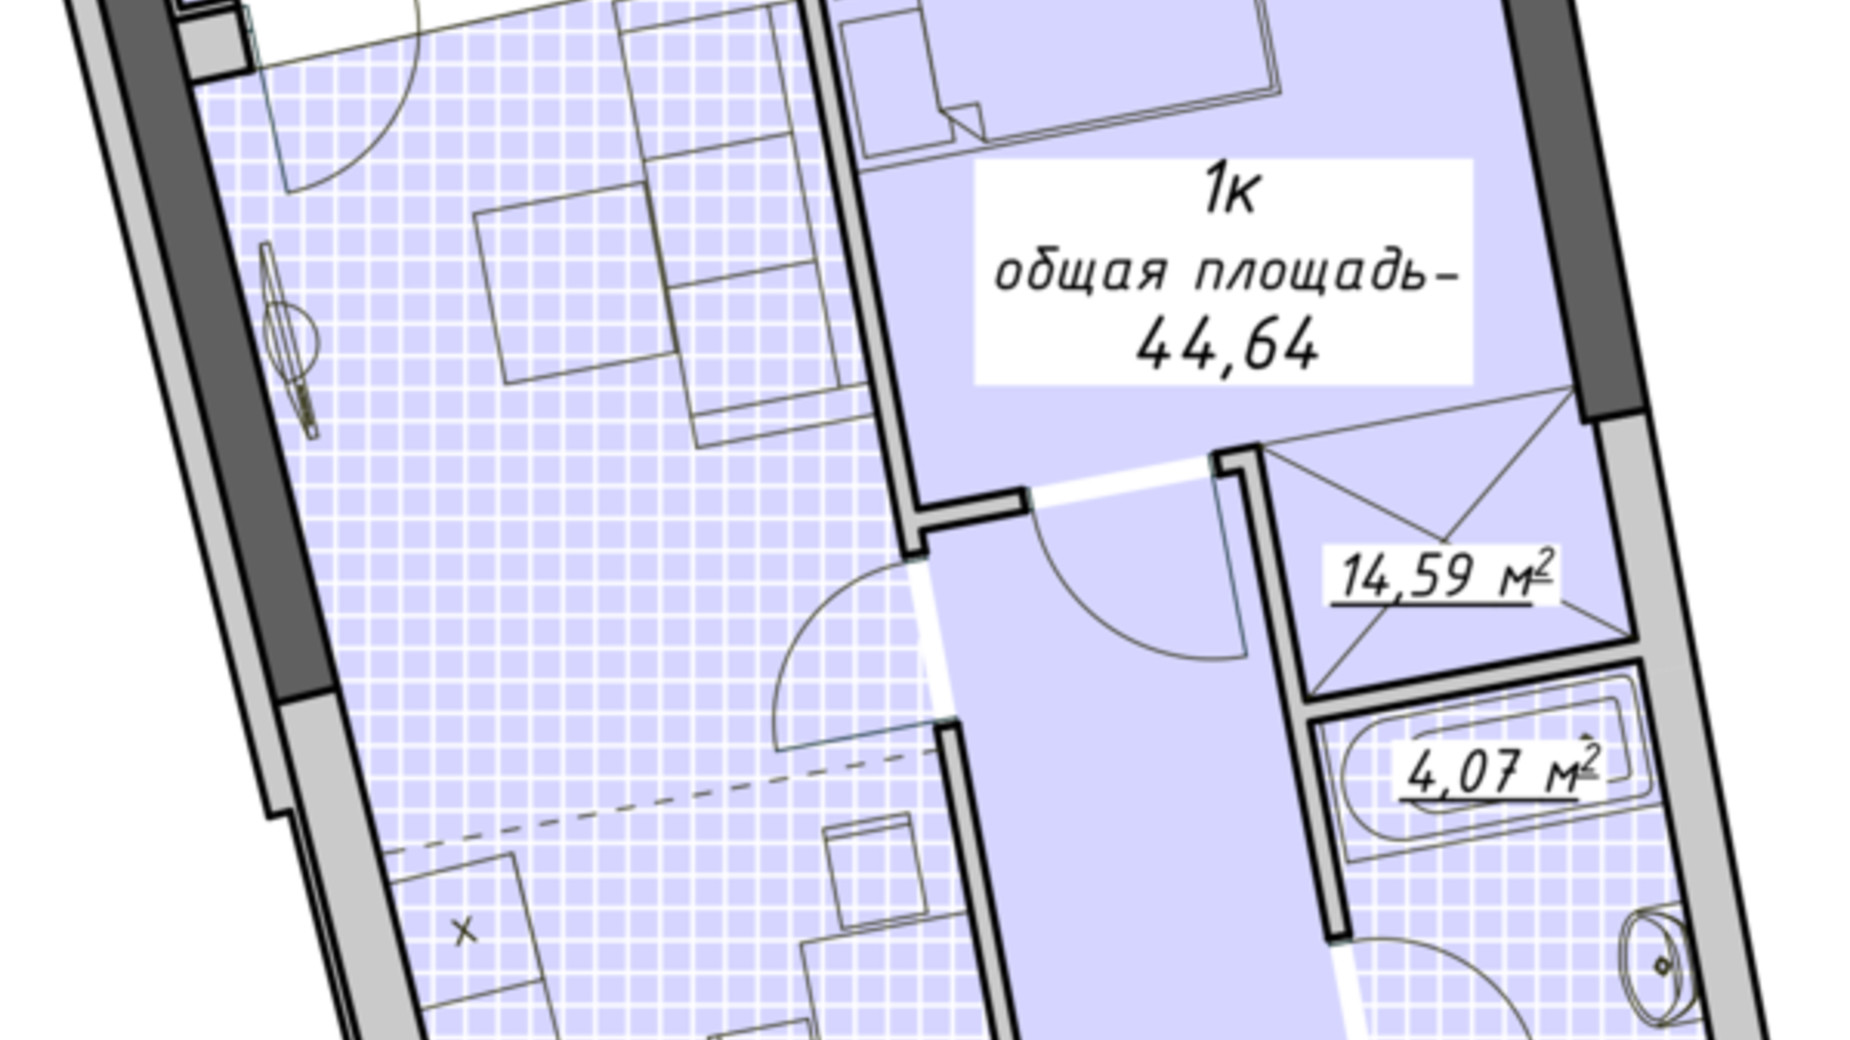 Планування 1-кімнатної квартири в ЖК Атмосфера 44.64 м², фото 680564